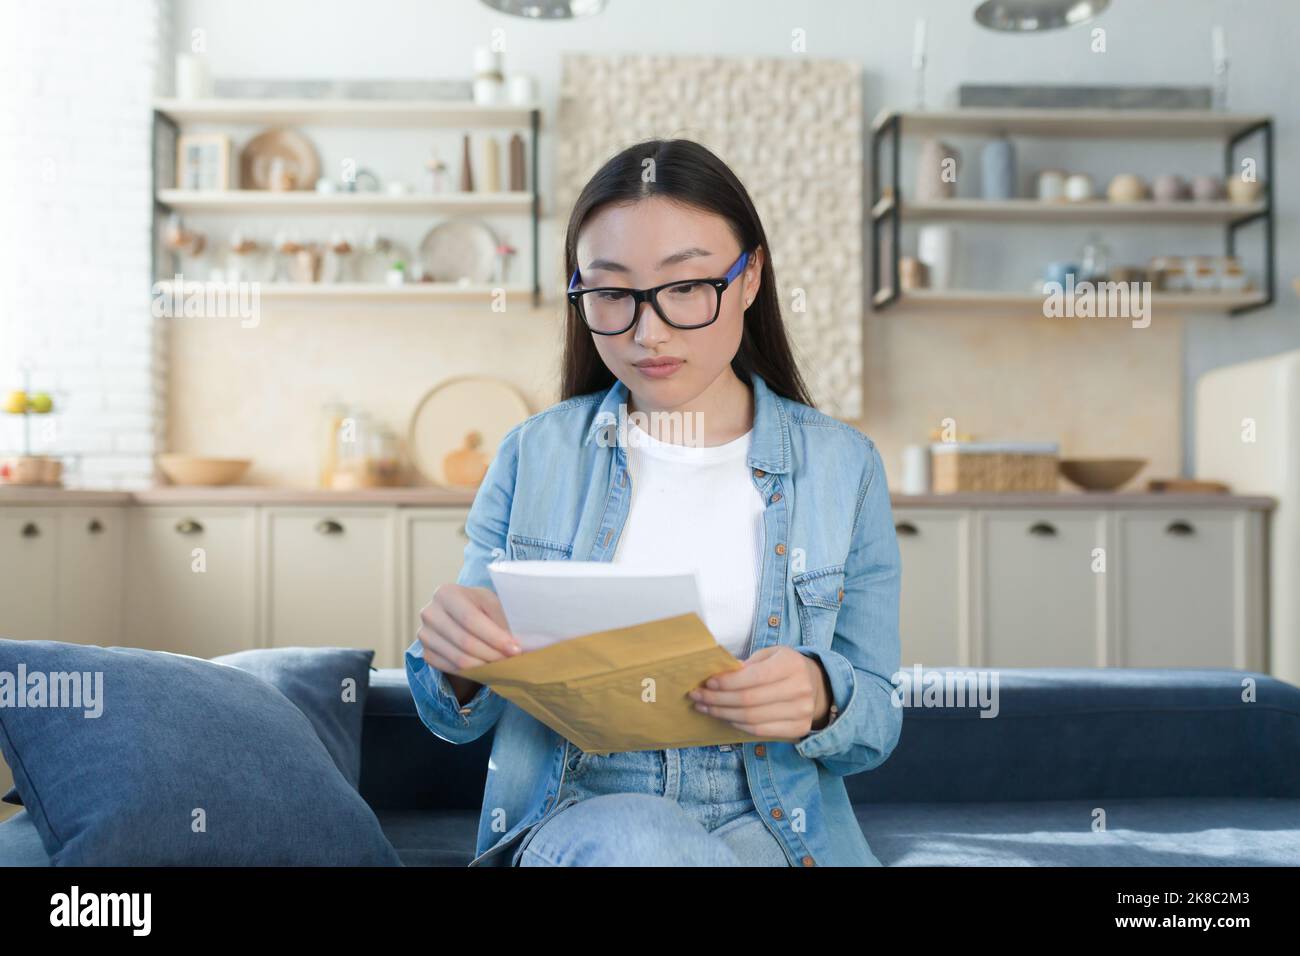 Une jeune fille étudiante asiatique magnifique a reçu une lettre d'admission à l'université dans le courrier. Elle tient une enveloppe entre ses mains. Assis à la maison sur le canapé, lecture. Banque D'Images